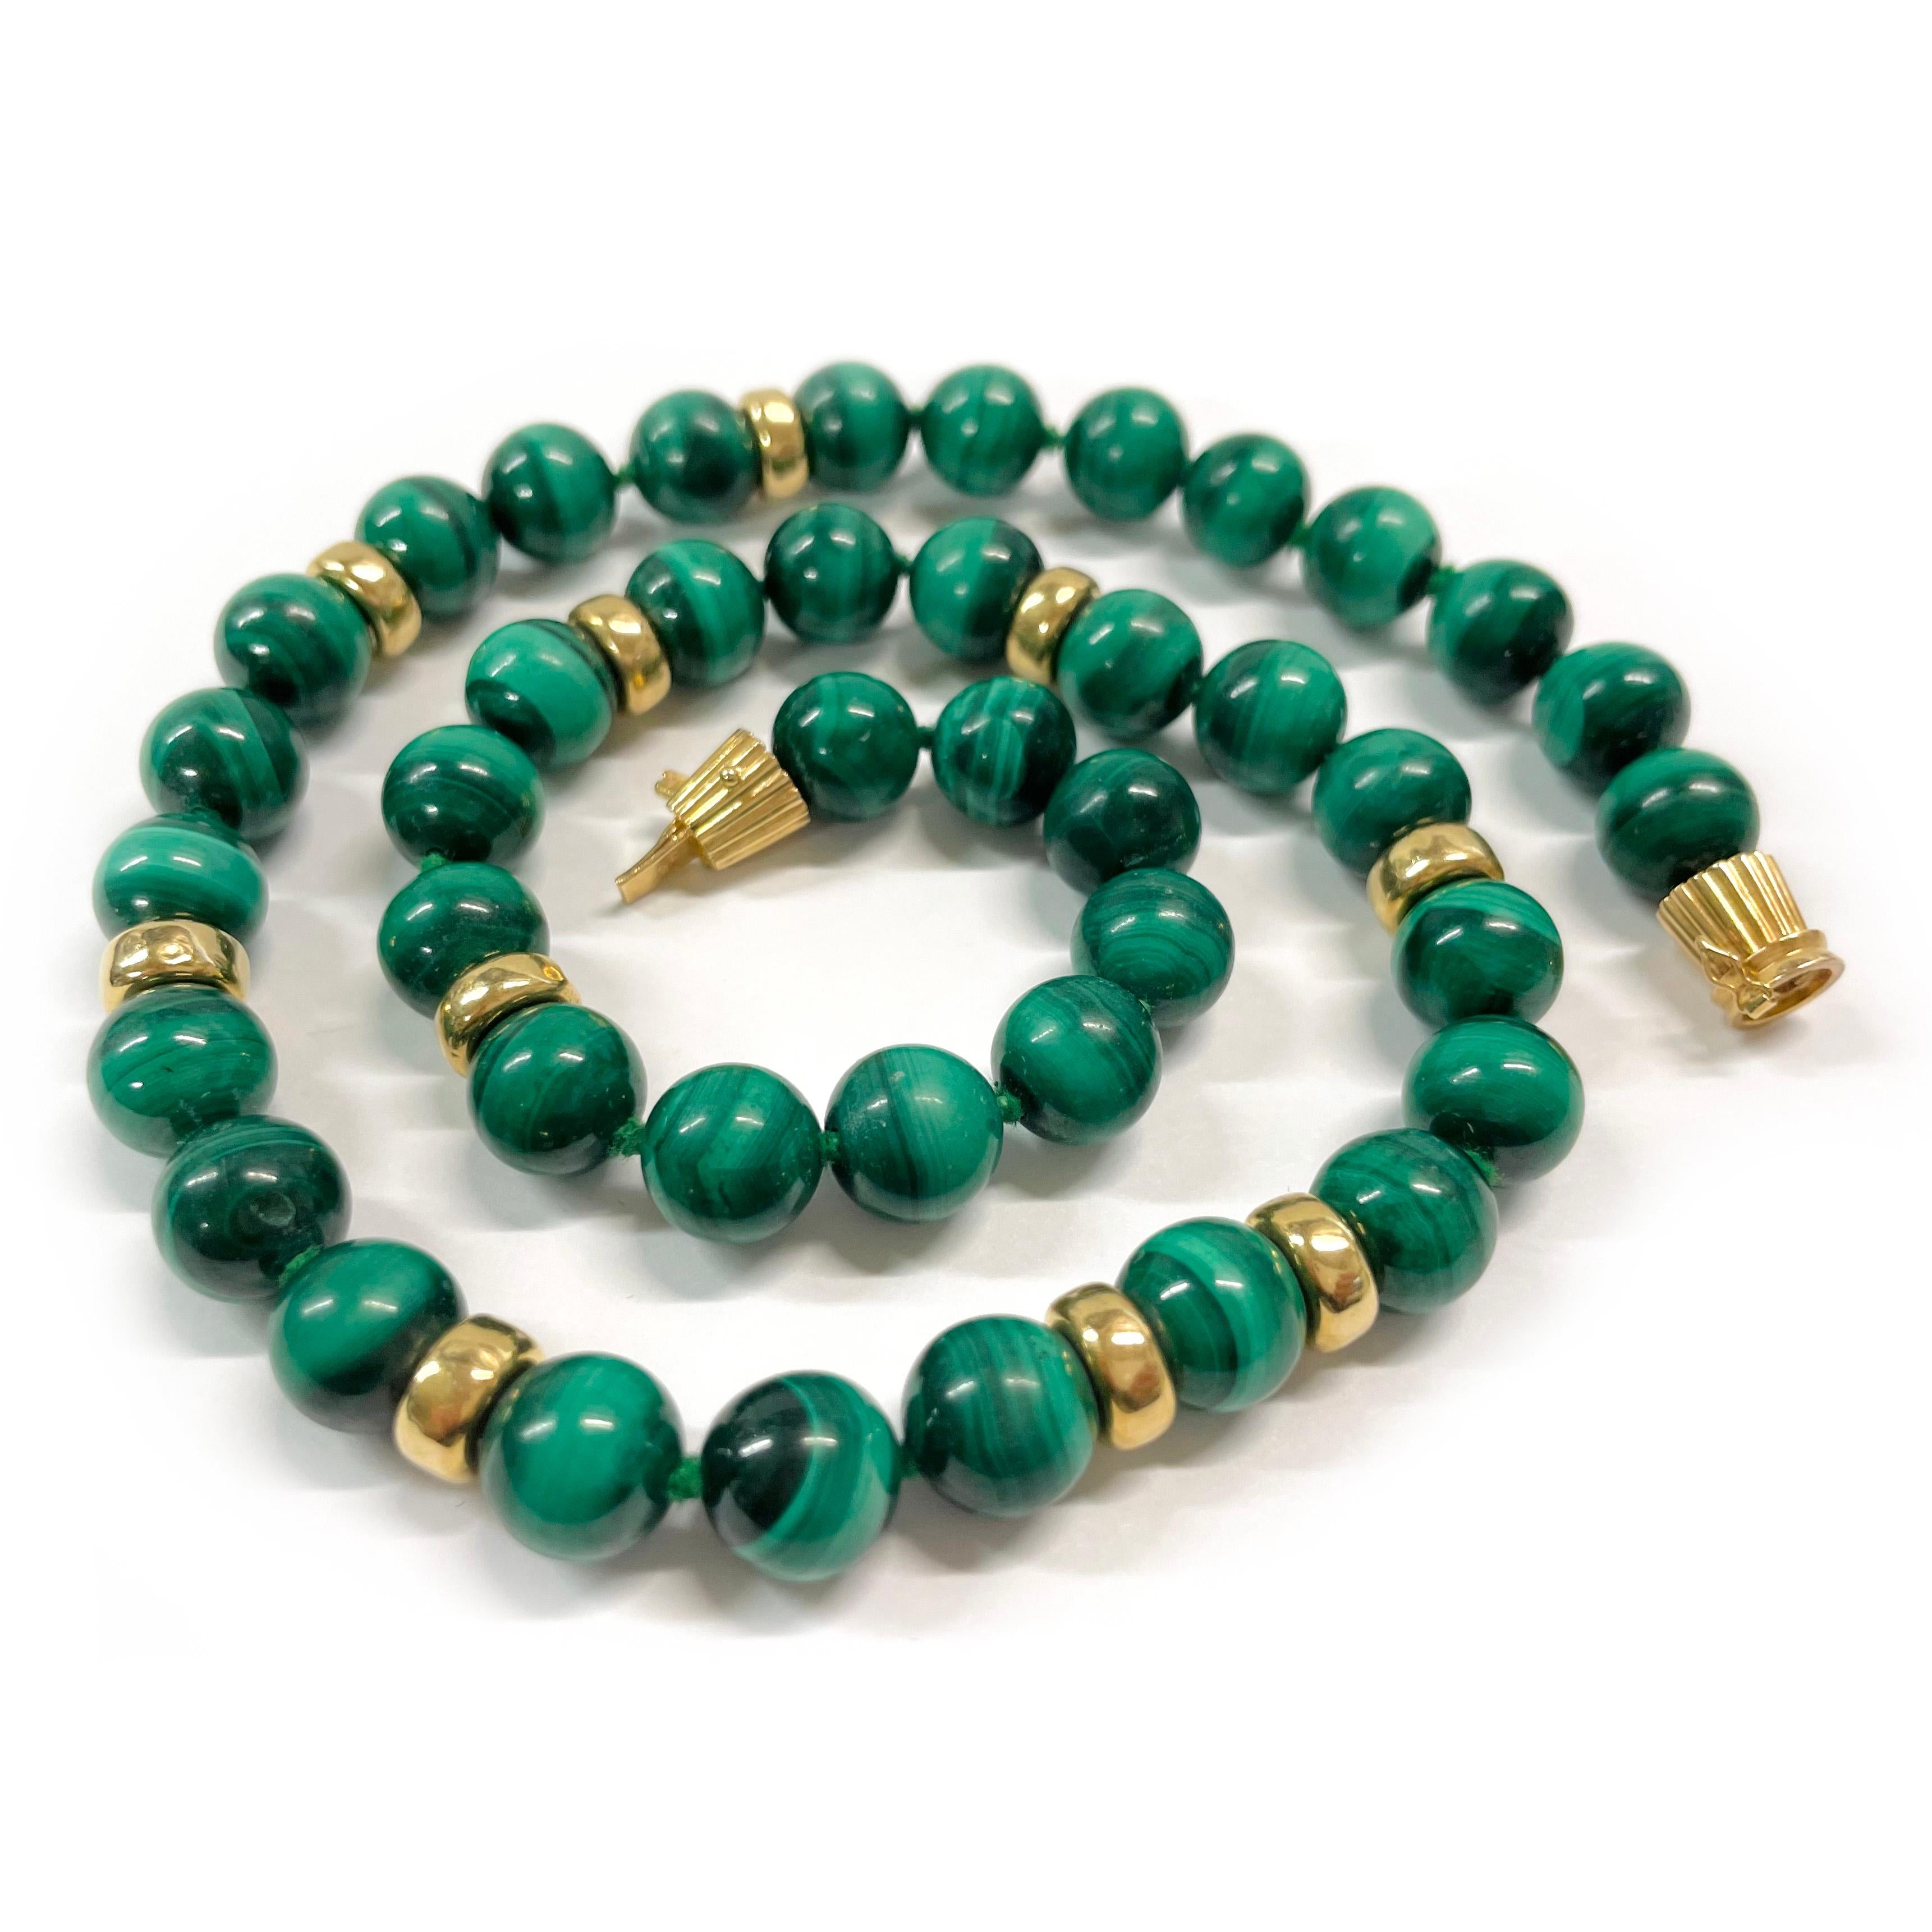 Collier de perles de malachite en or jaune 14 carats. Le collier est composé de 41 perles rondes en malachite et de 10 perles rondes en or sur un seul fil. Les perles en malachite mesurent 10 mm de diamètre et les perles en or en forme de rondelle